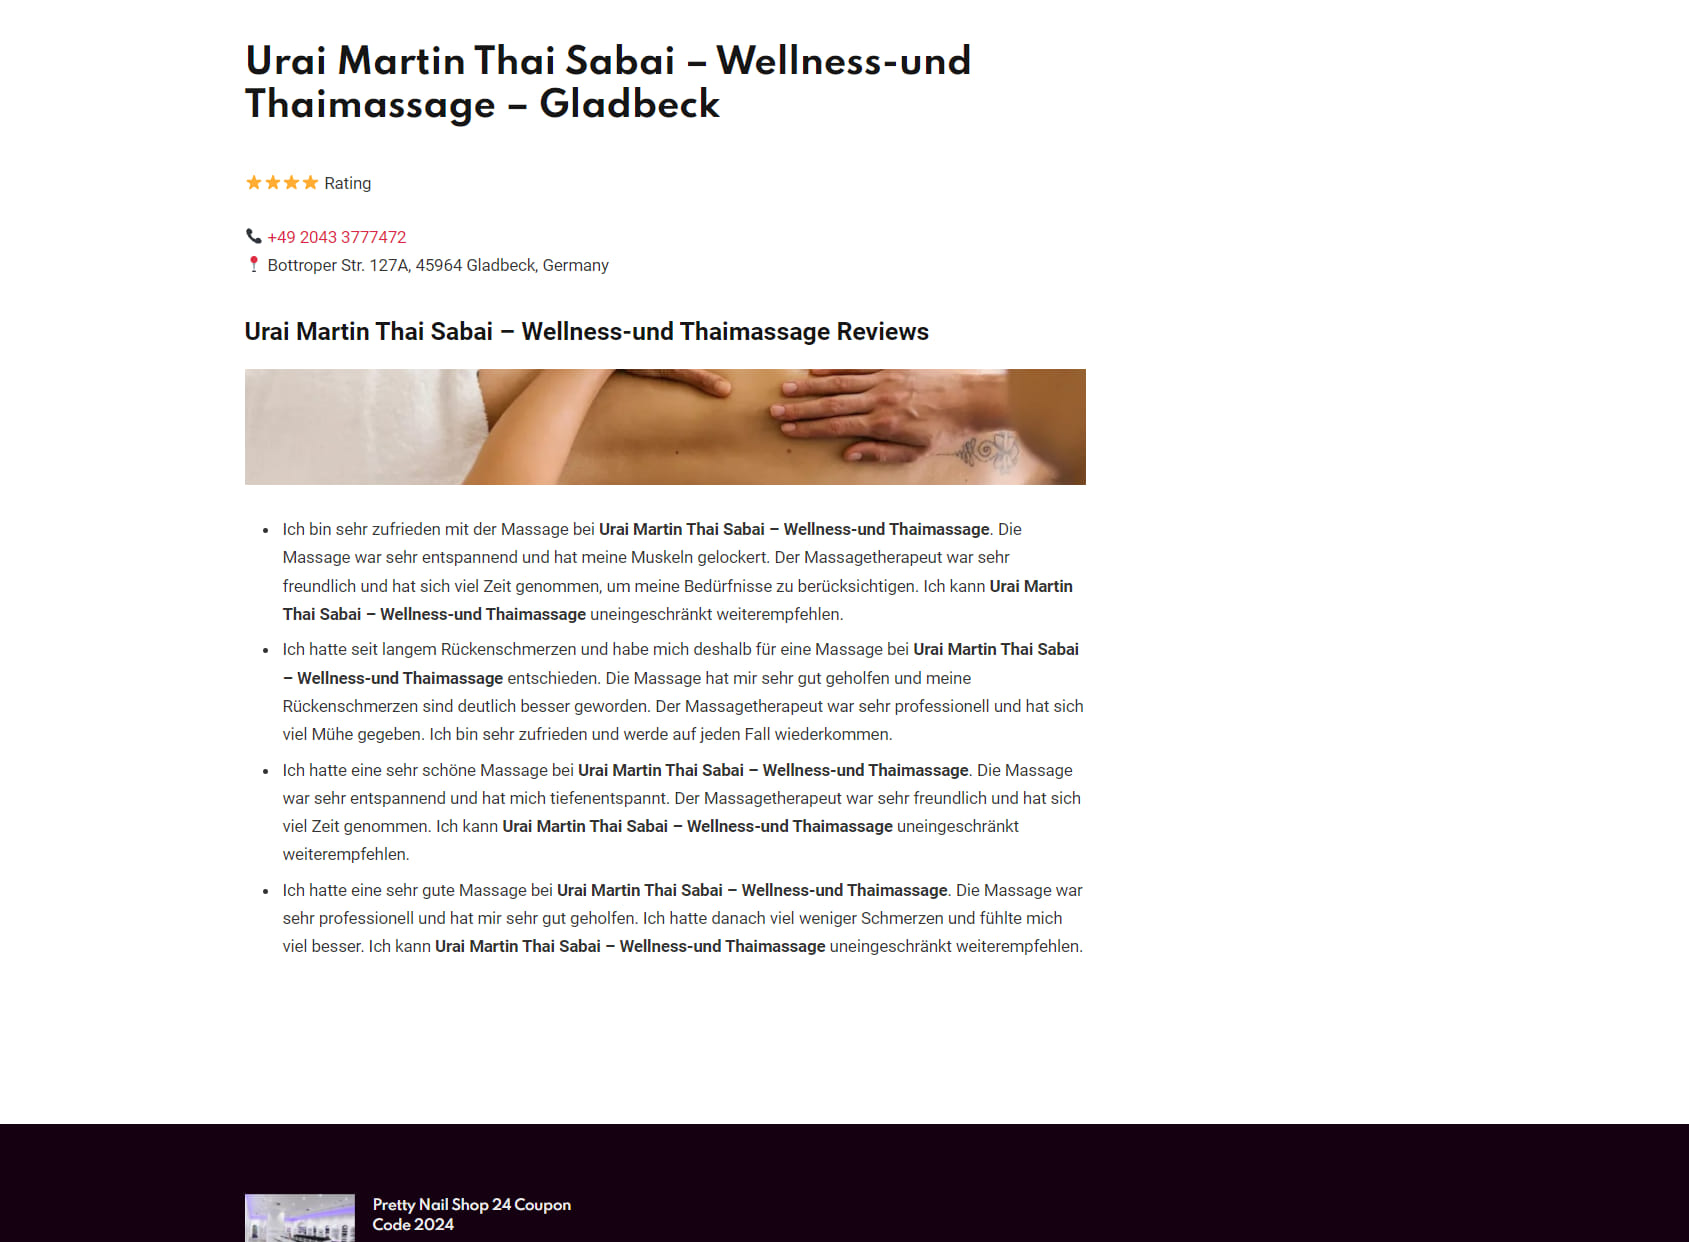 Urai Martin Thai Sabai & Wellness-und Thaimassage - Gladbeck